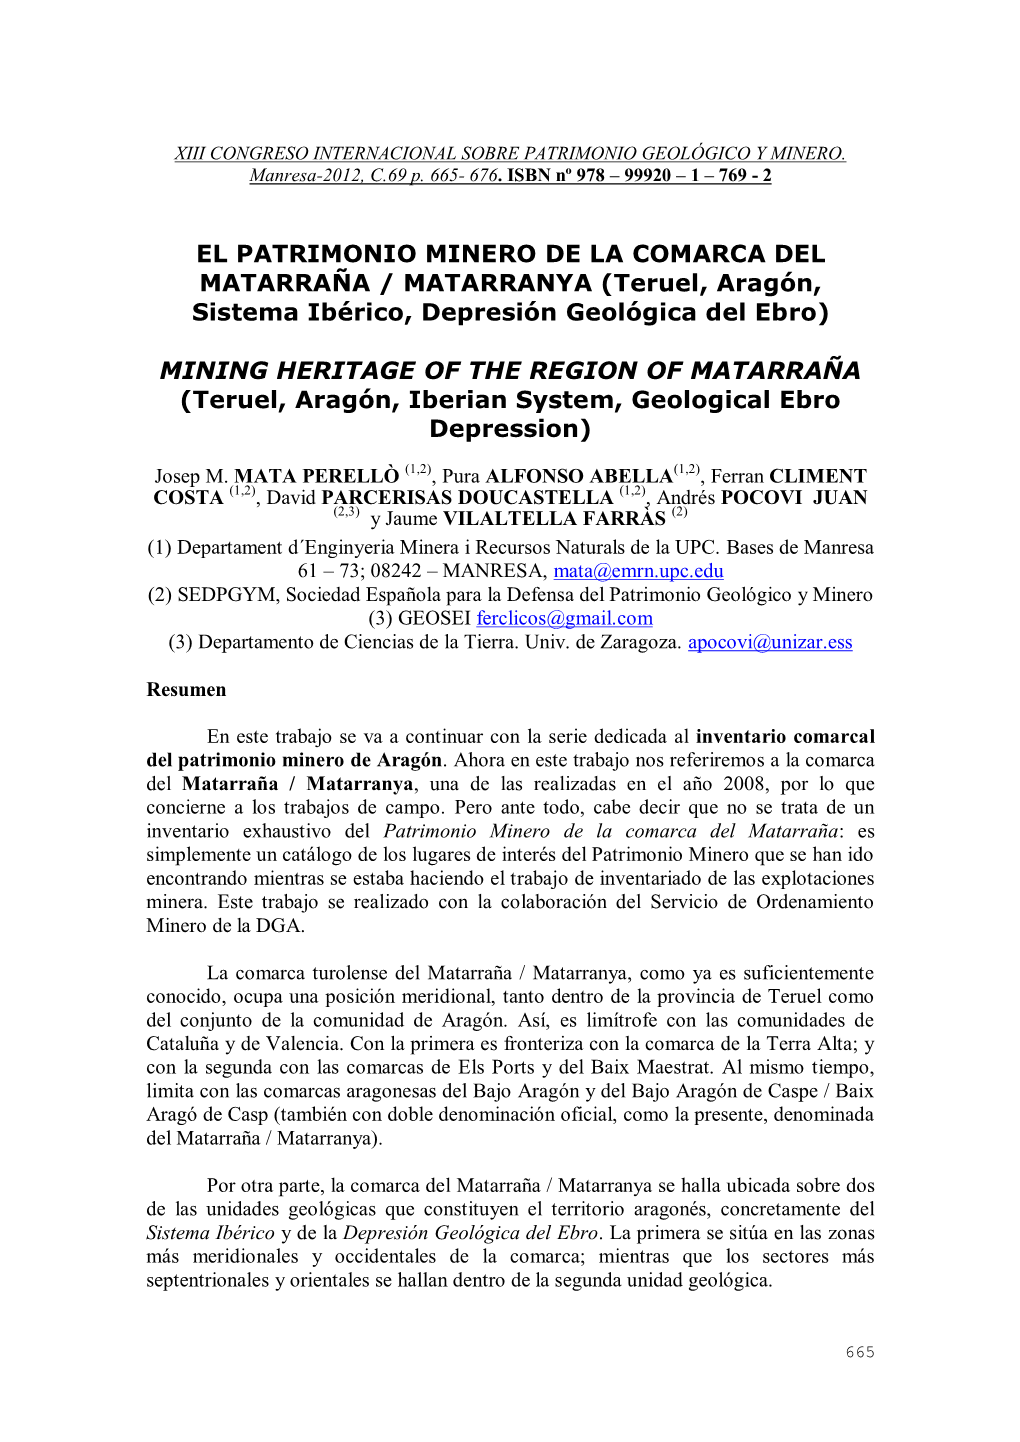 EL PATRIMONIO MINERO DE LA COMARCA DEL MATARRAÑA / MATARRANYA (Teruel, Aragón, Sistema Ibérico, Depresión Geológica Del Ebro)